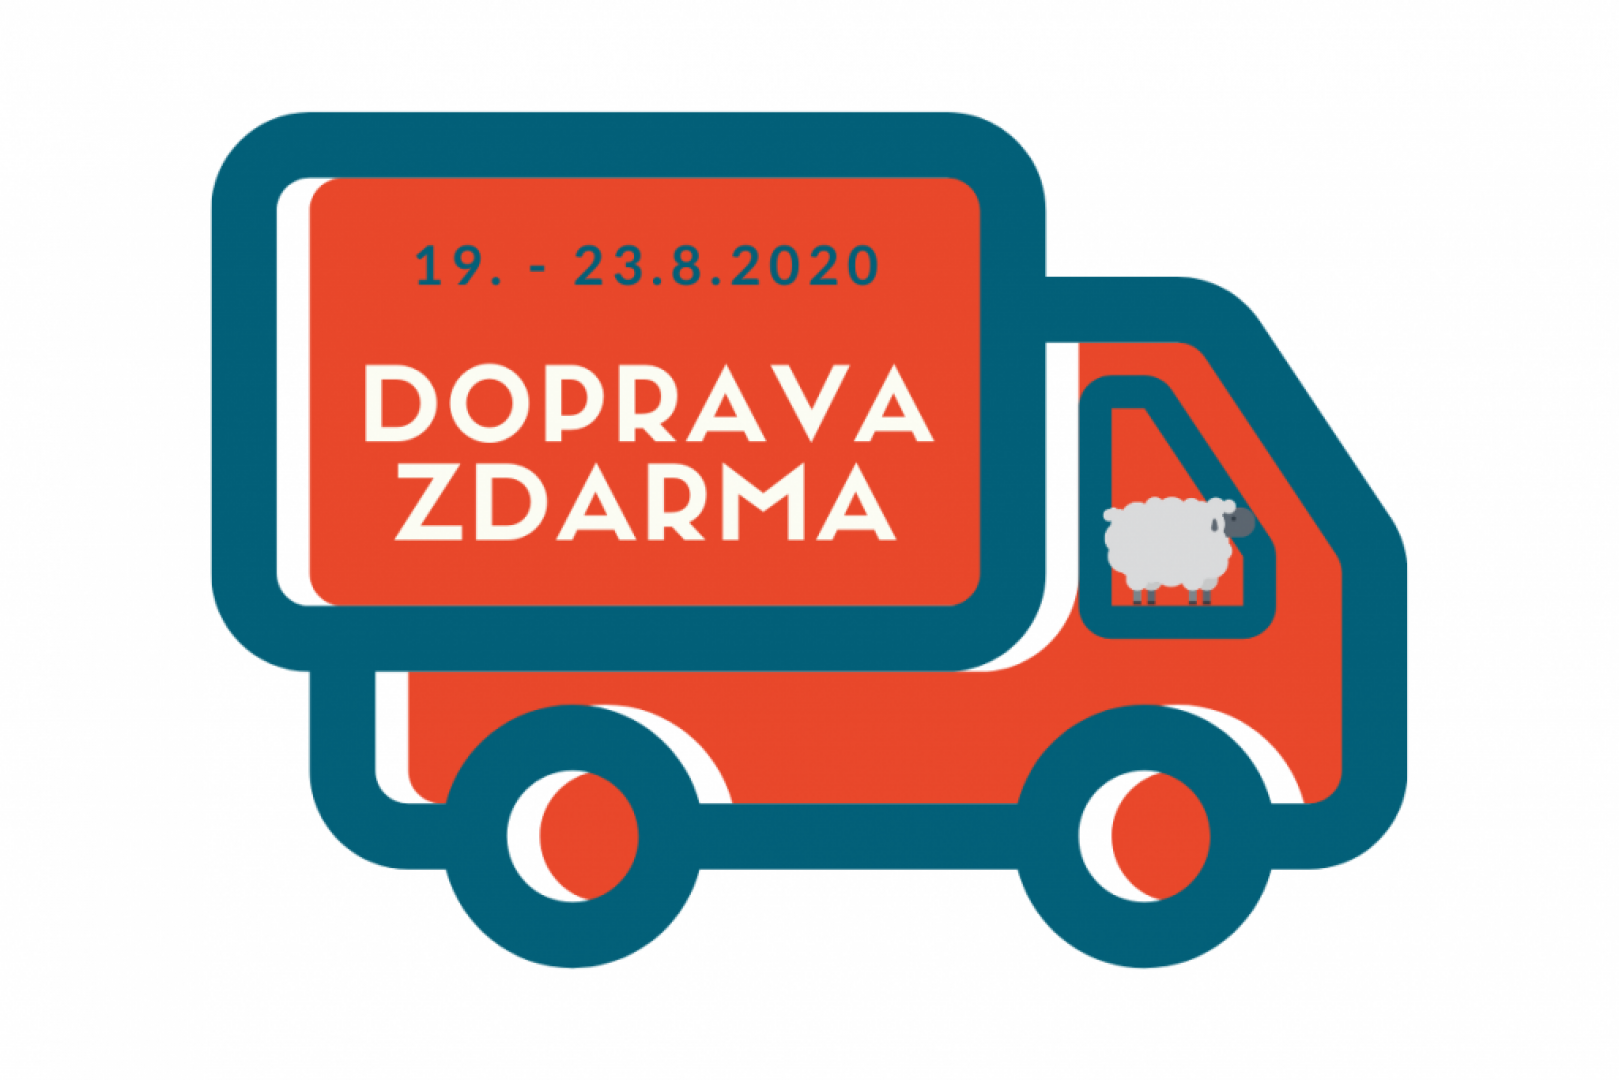 Dny dopravy zdarma 19. - 23.8.2020